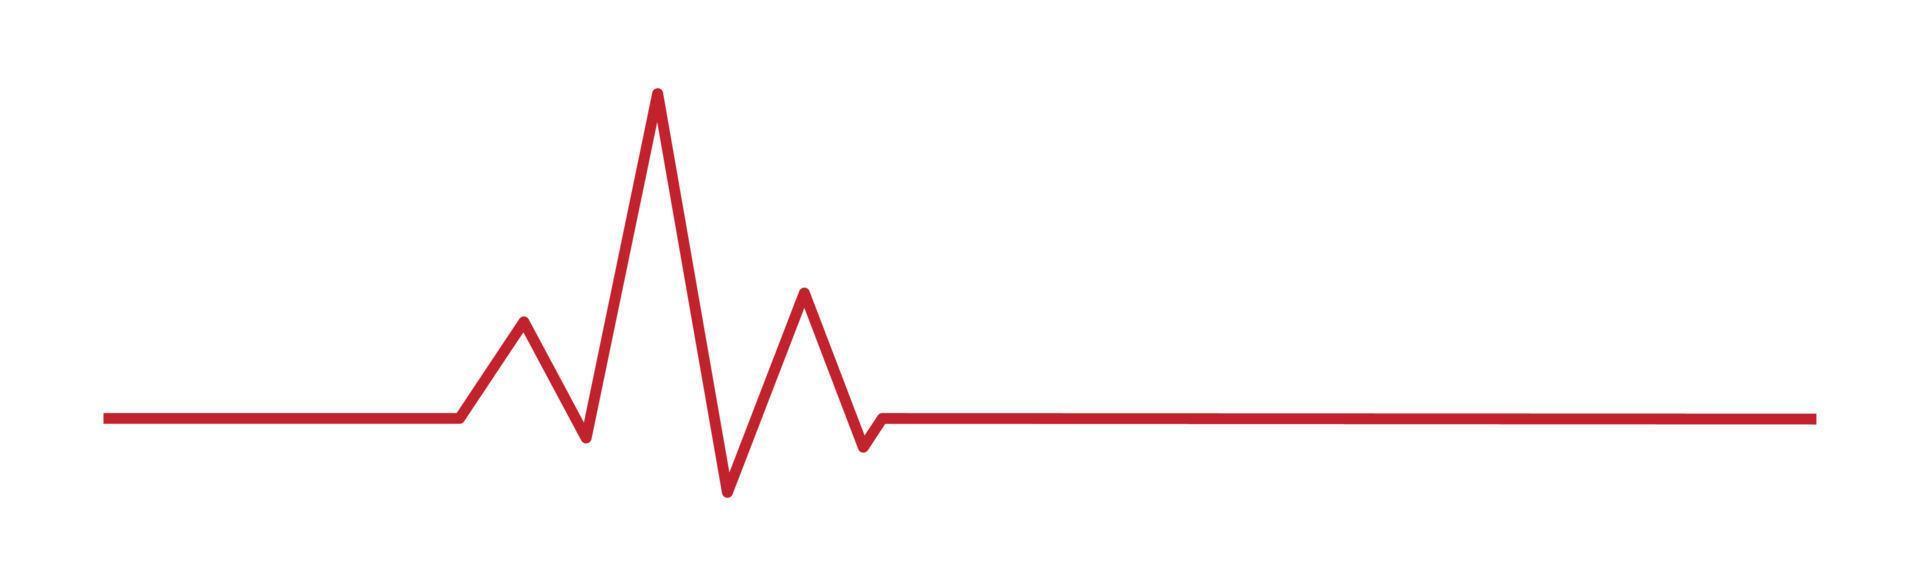 pulso cardíaco - línea roja curva sobre un fondo blanco - vector